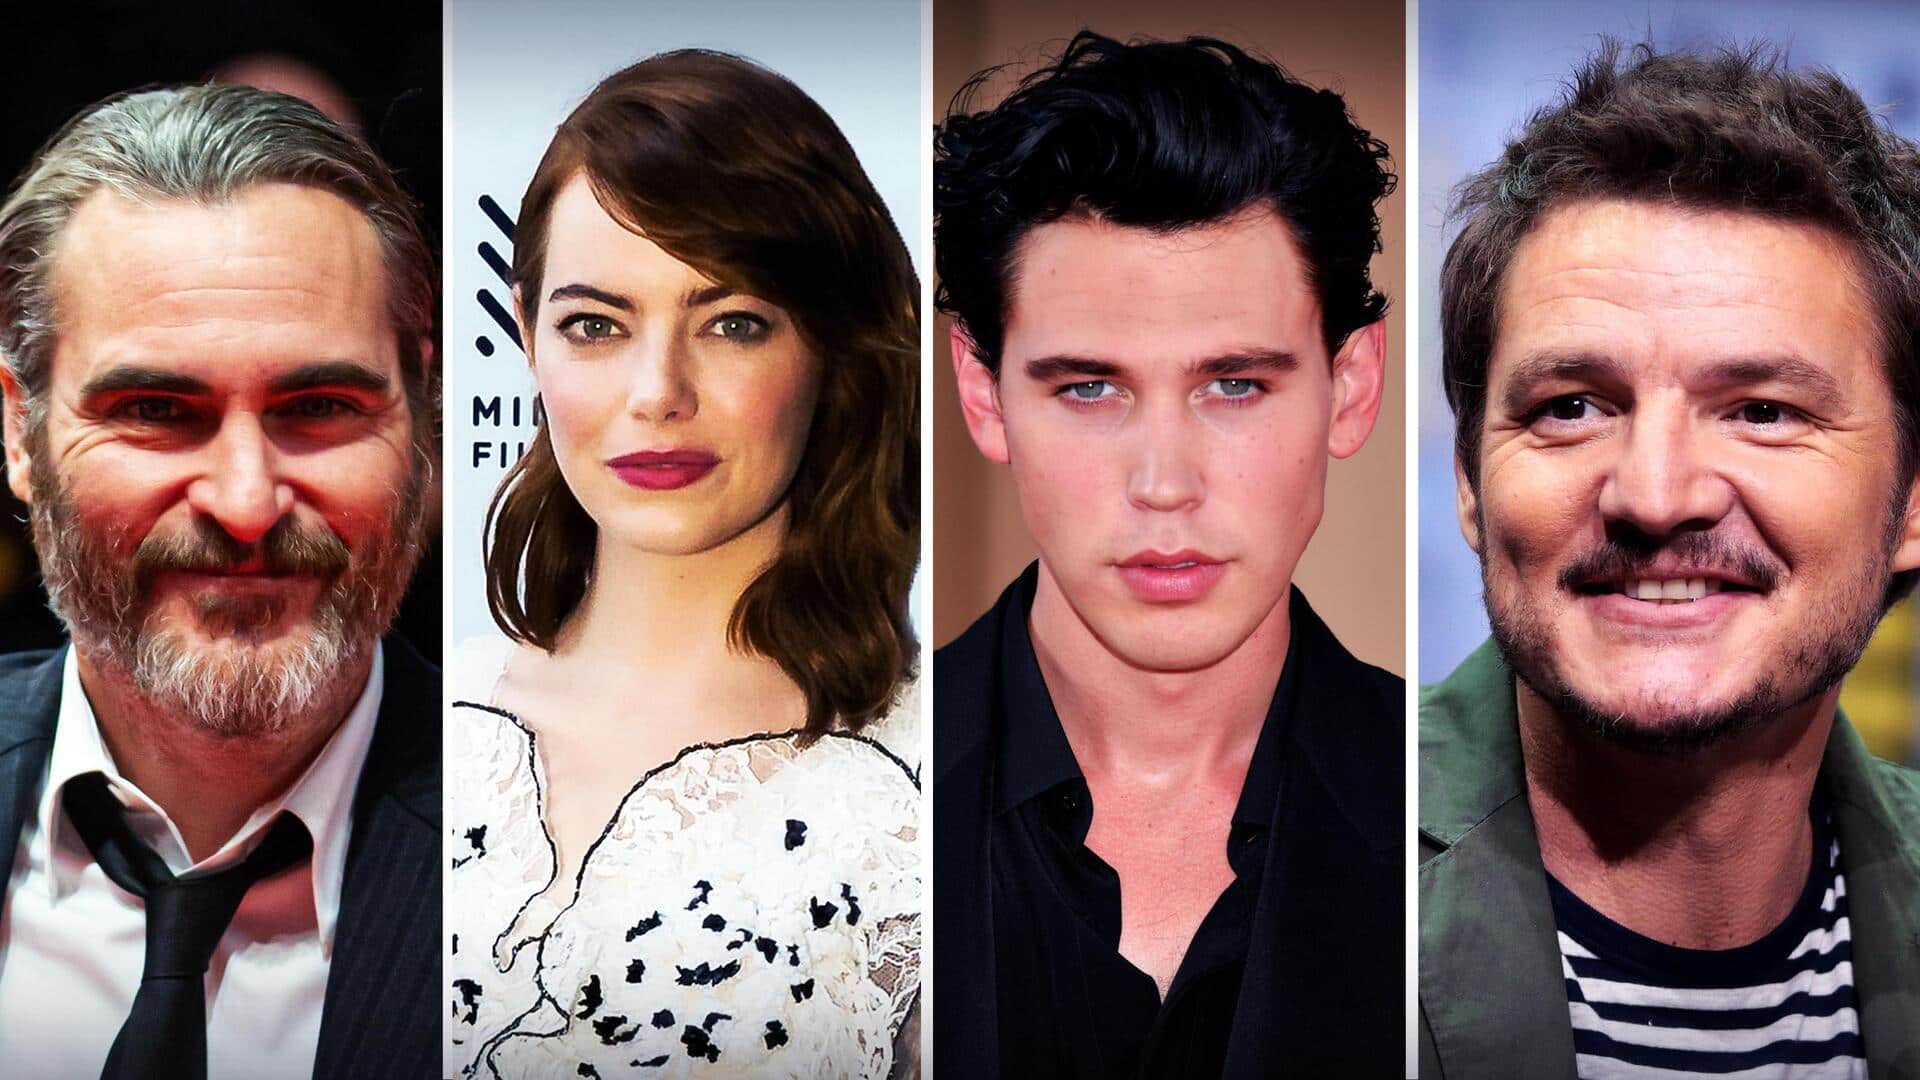 Ari Aster's 'Eddington' to begin production with star-studded Hollywood cast